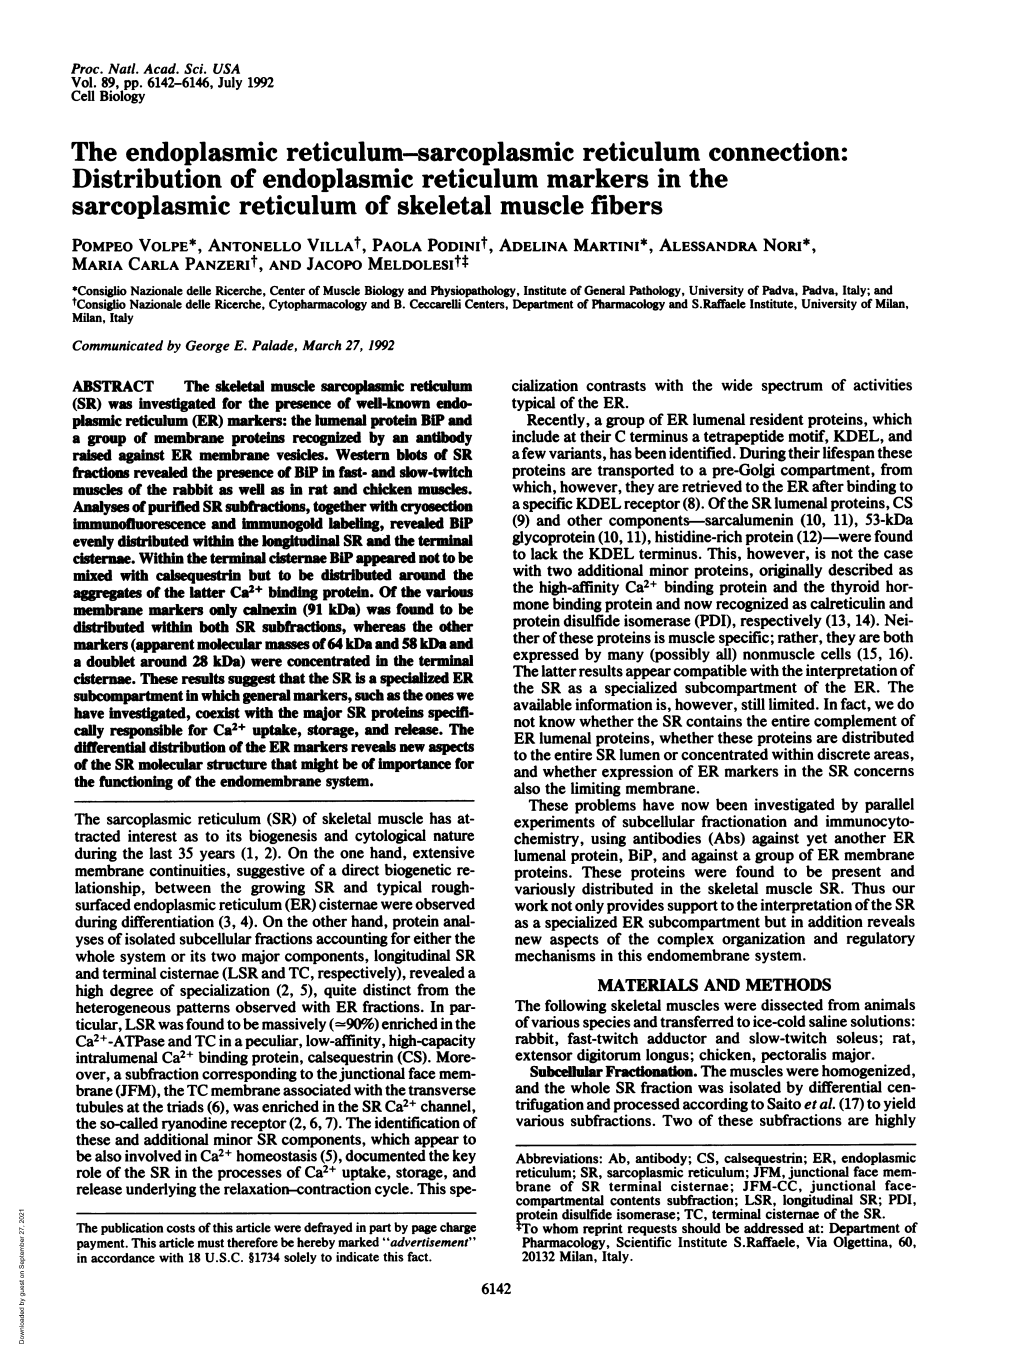 The Endoplasmic Reticulum-Sarcoplasmic Reticulum Connection